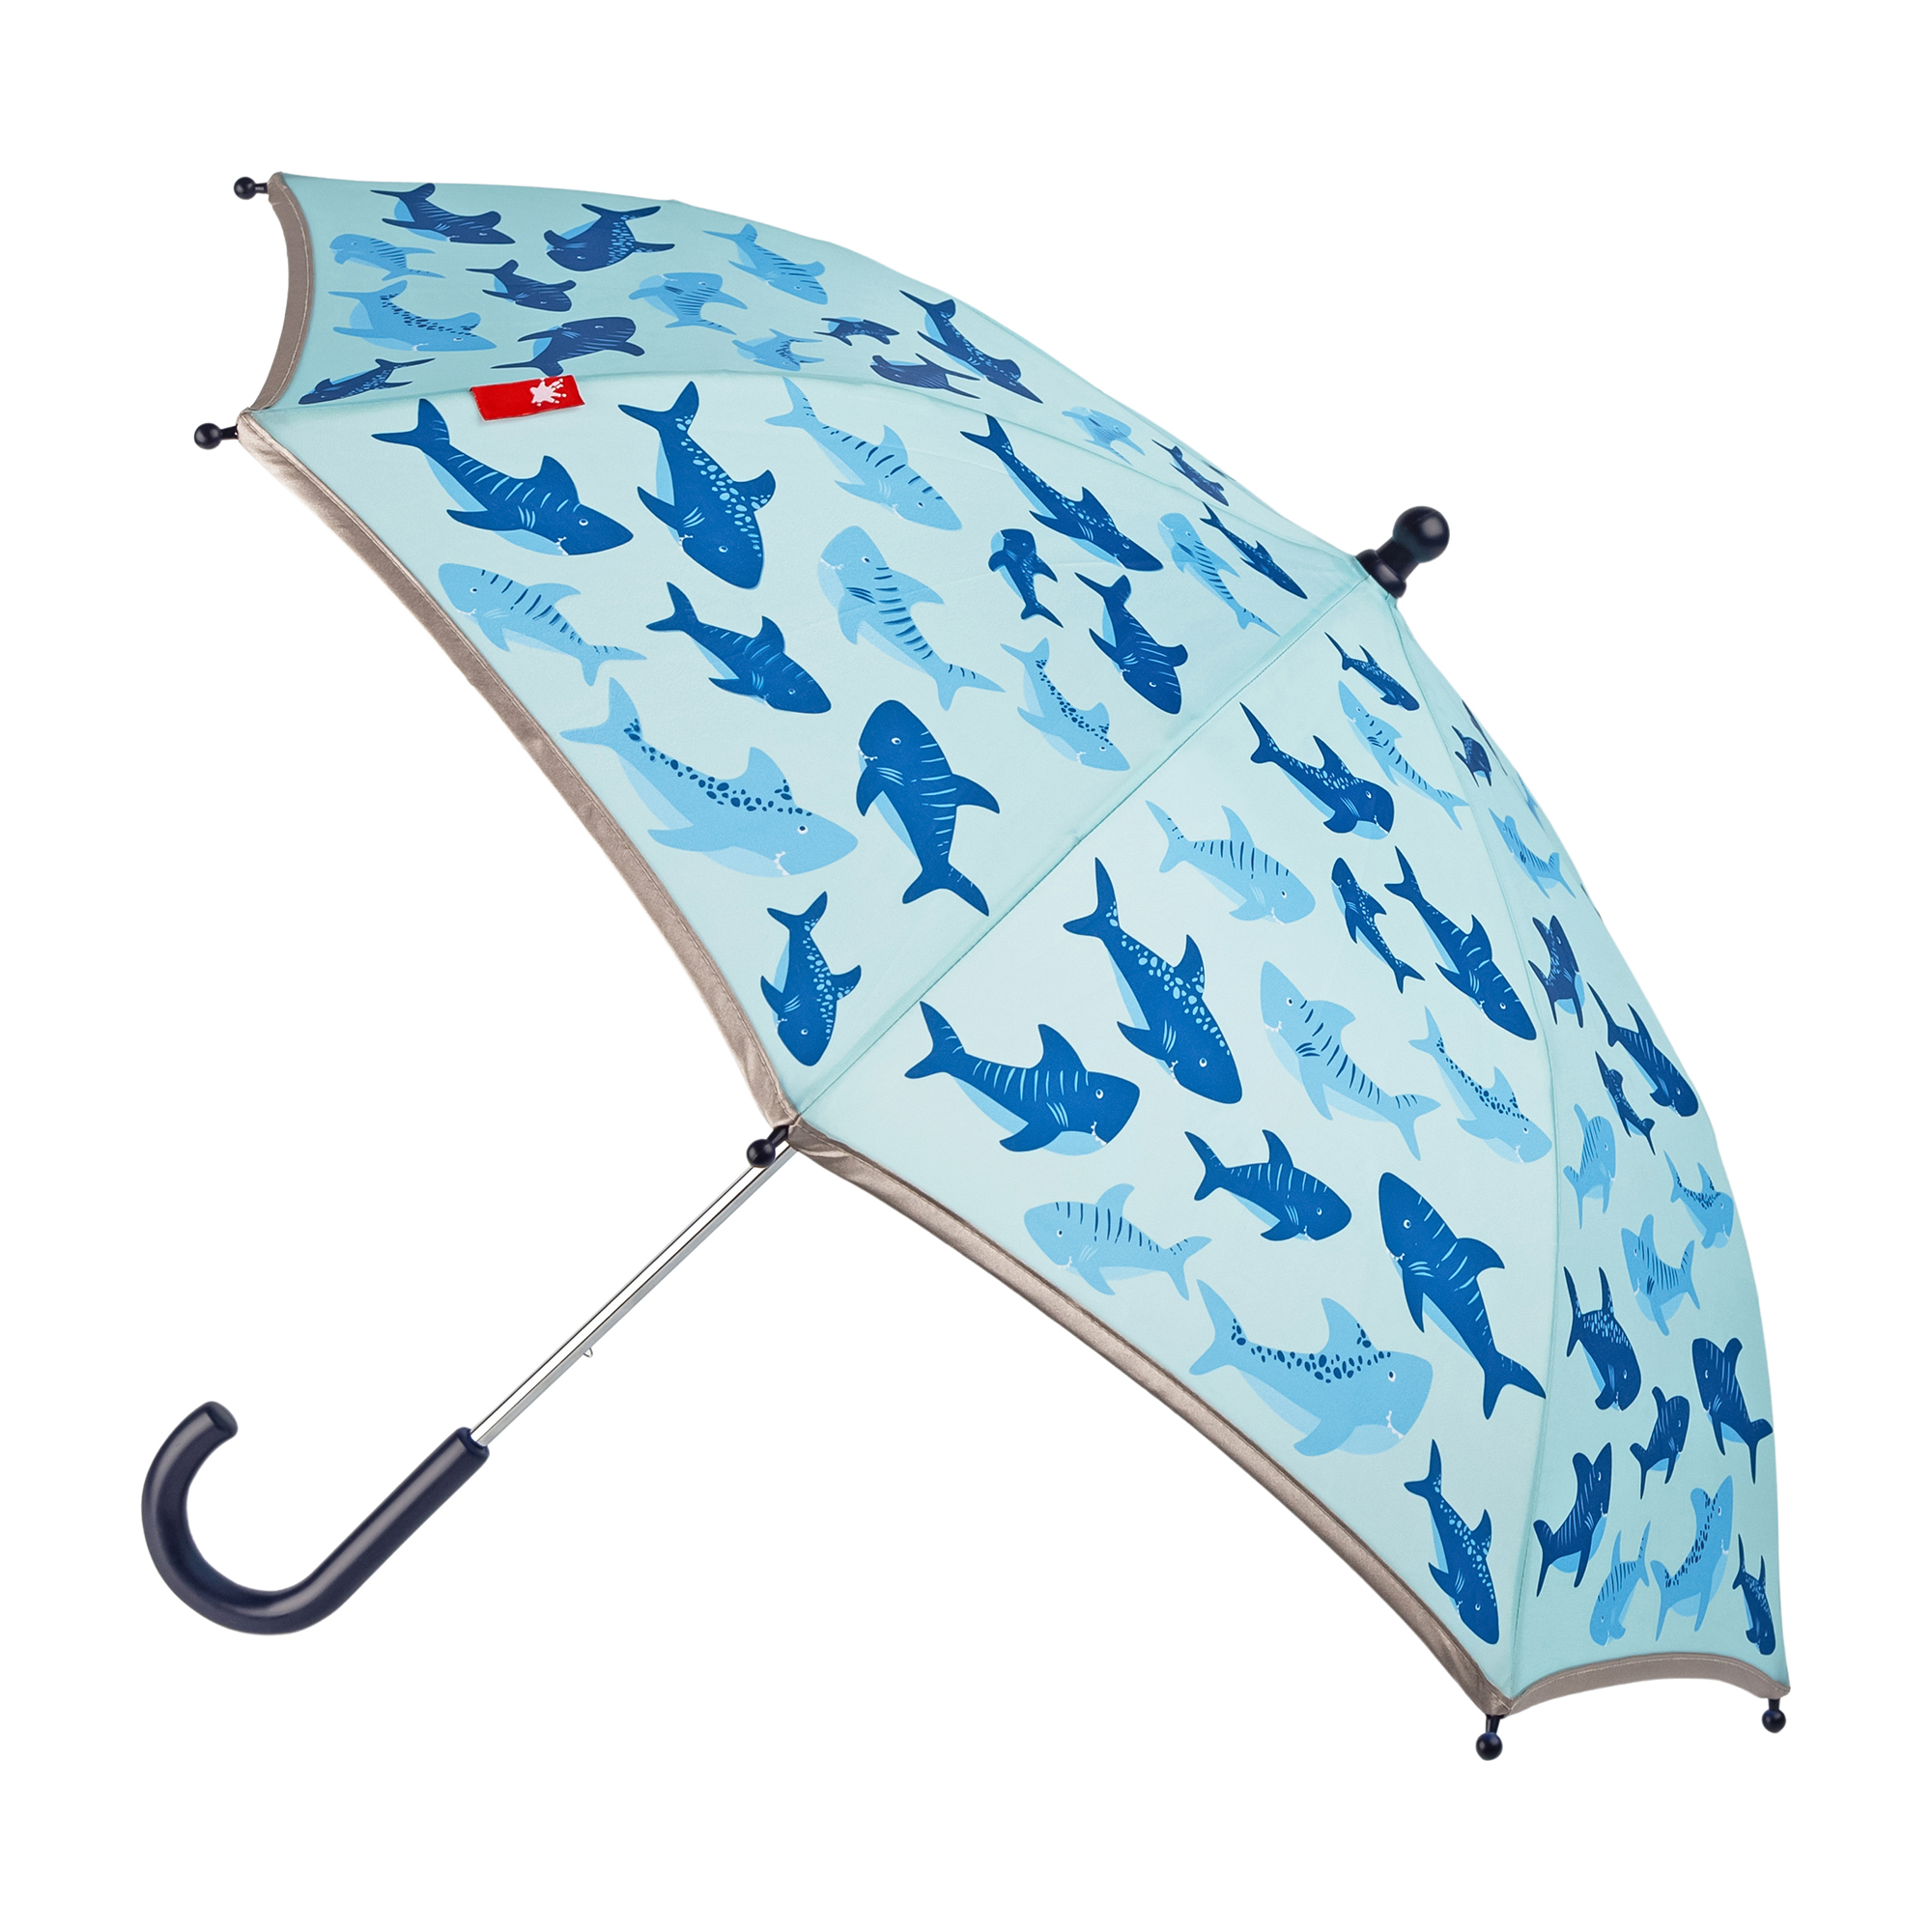 Children's umbrella sharks, reflective edge